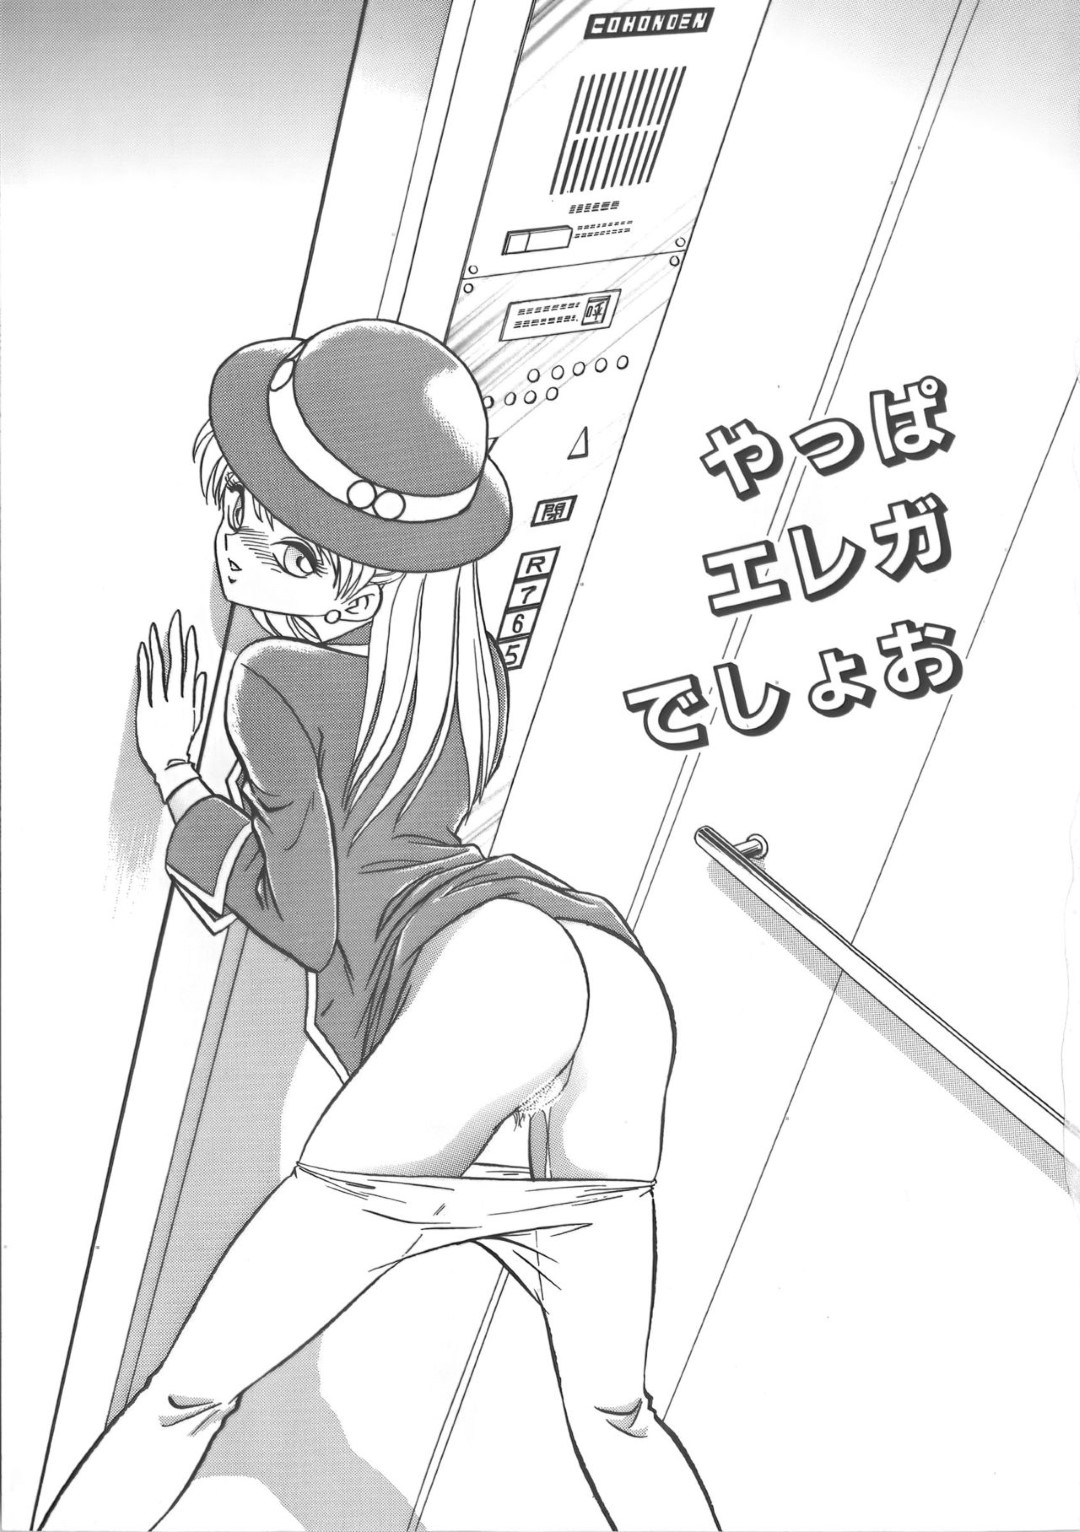 【レイプエロ漫画】ストーカーにエレベーターでレイプされるエレガ…【毛野楊太郎】